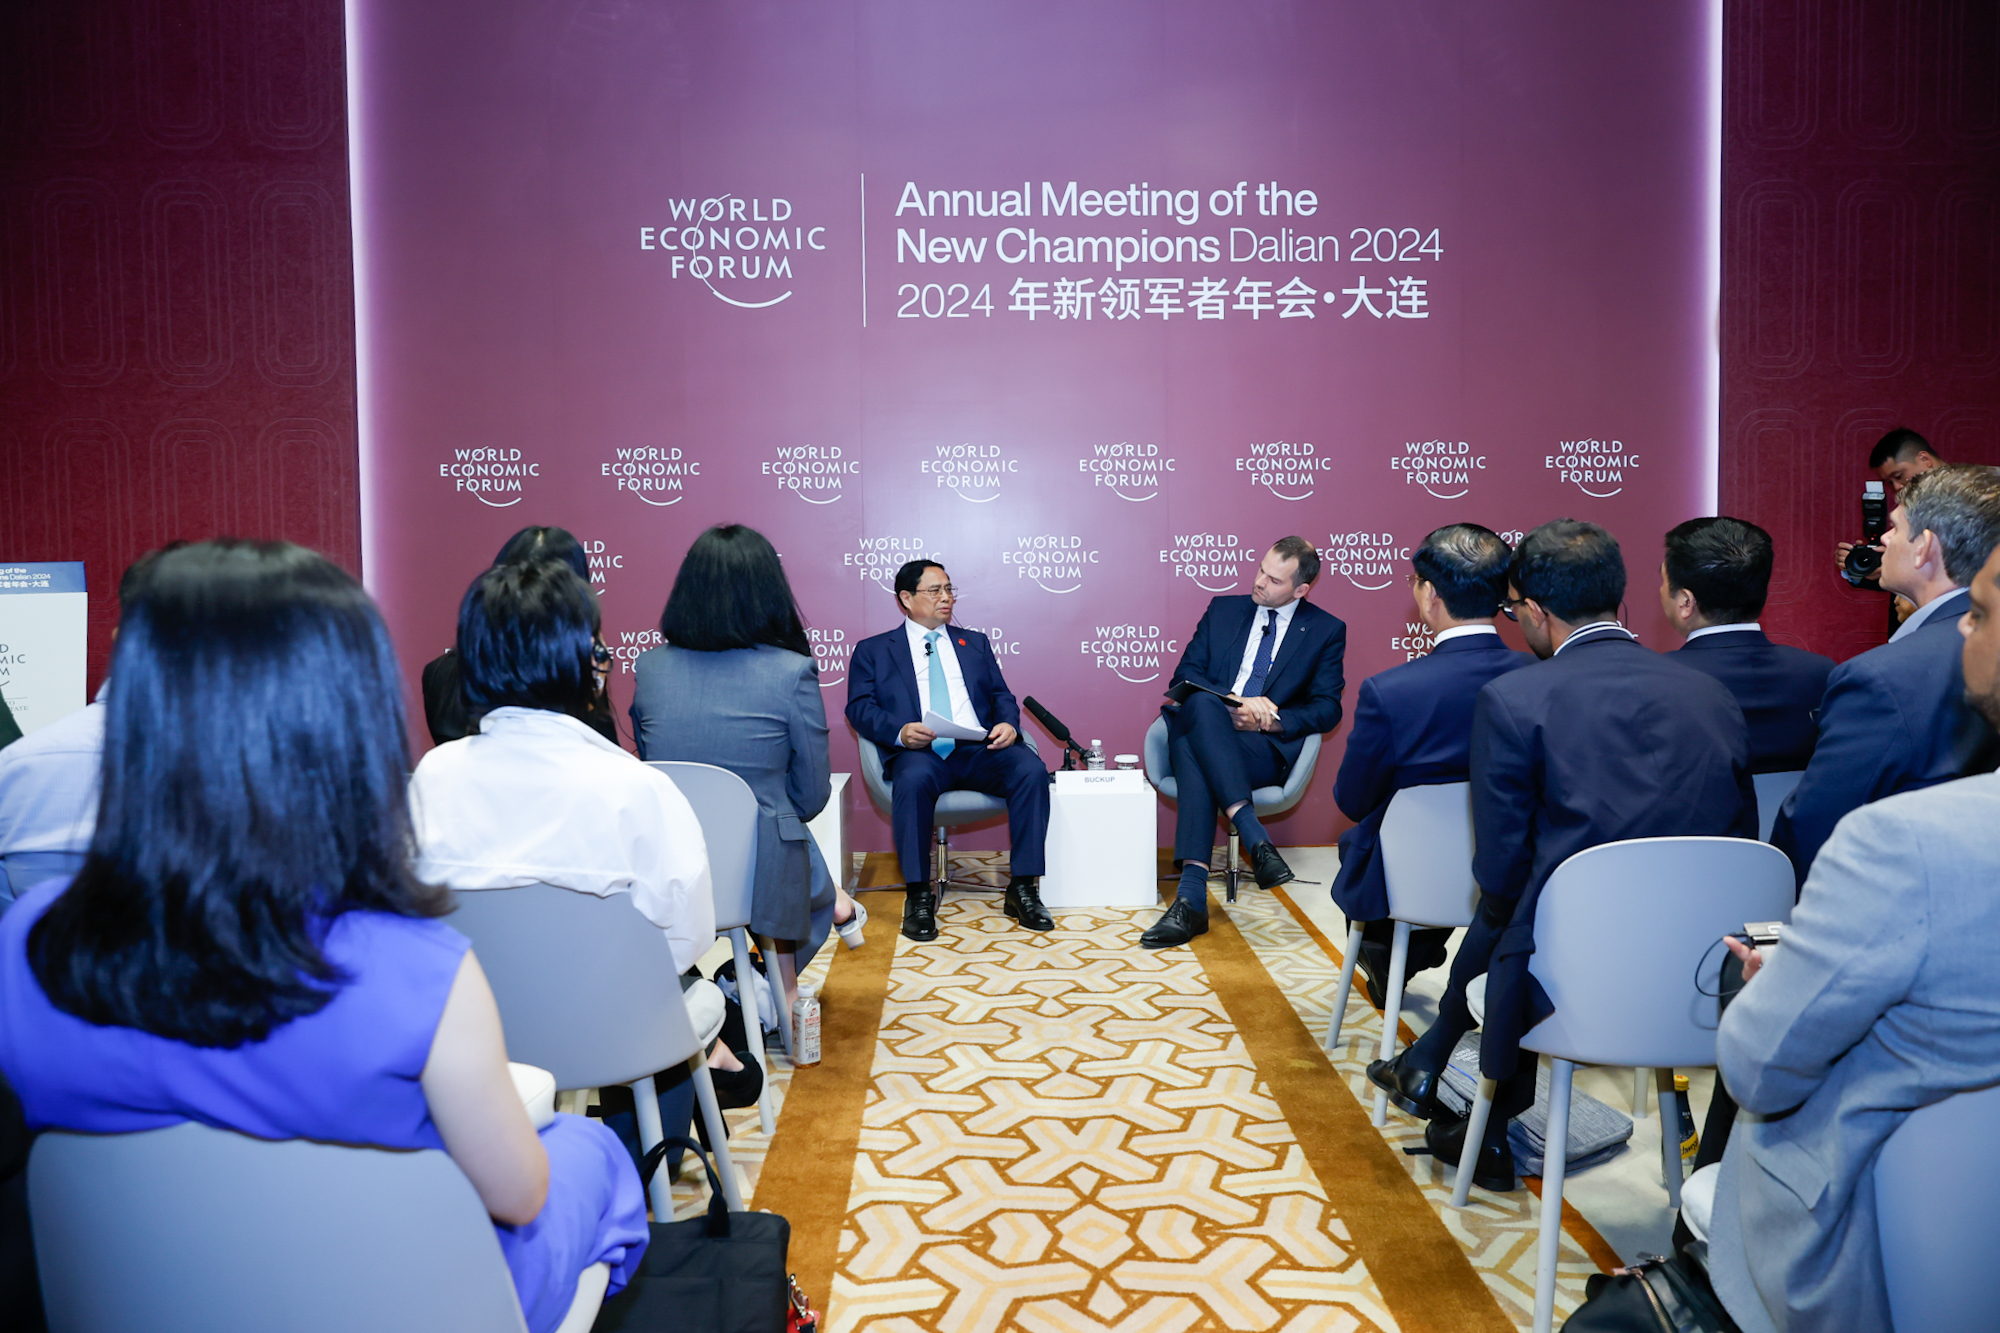 Thủ tướng Chính phủ Phạm Minh Chính dự Tọa đàm với cộng đồng doanh nghiệp khởi nghiệp, đổi mới sáng tạo của WEF - Ảnh: VGP/Nhật Bắc